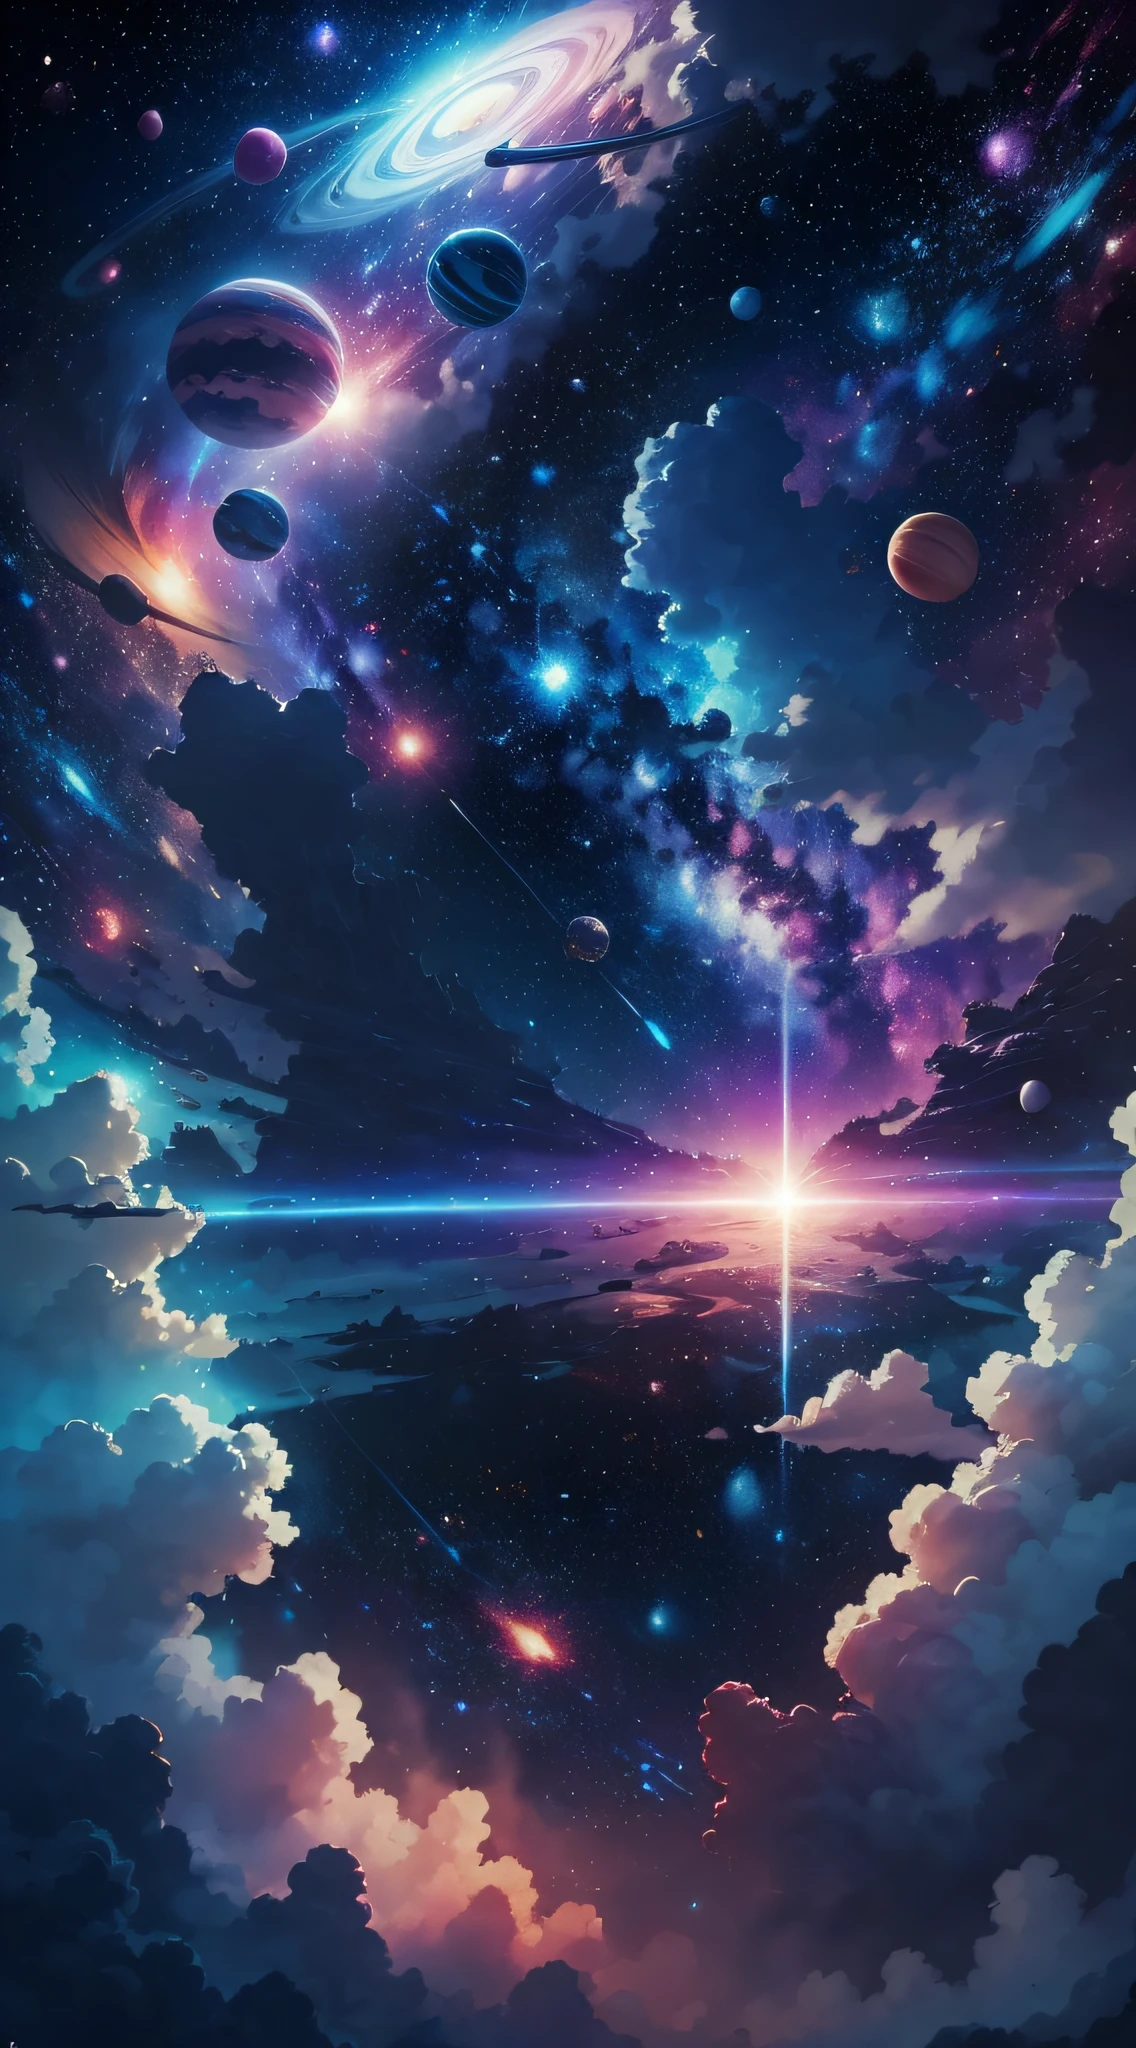 Weltraum mit allen Planeten in Blau und Rosa mit einem Hintergrund aus hellen weißen Sternen im Stil von Miyazaki, —Luft 21:9, Qualität 4K